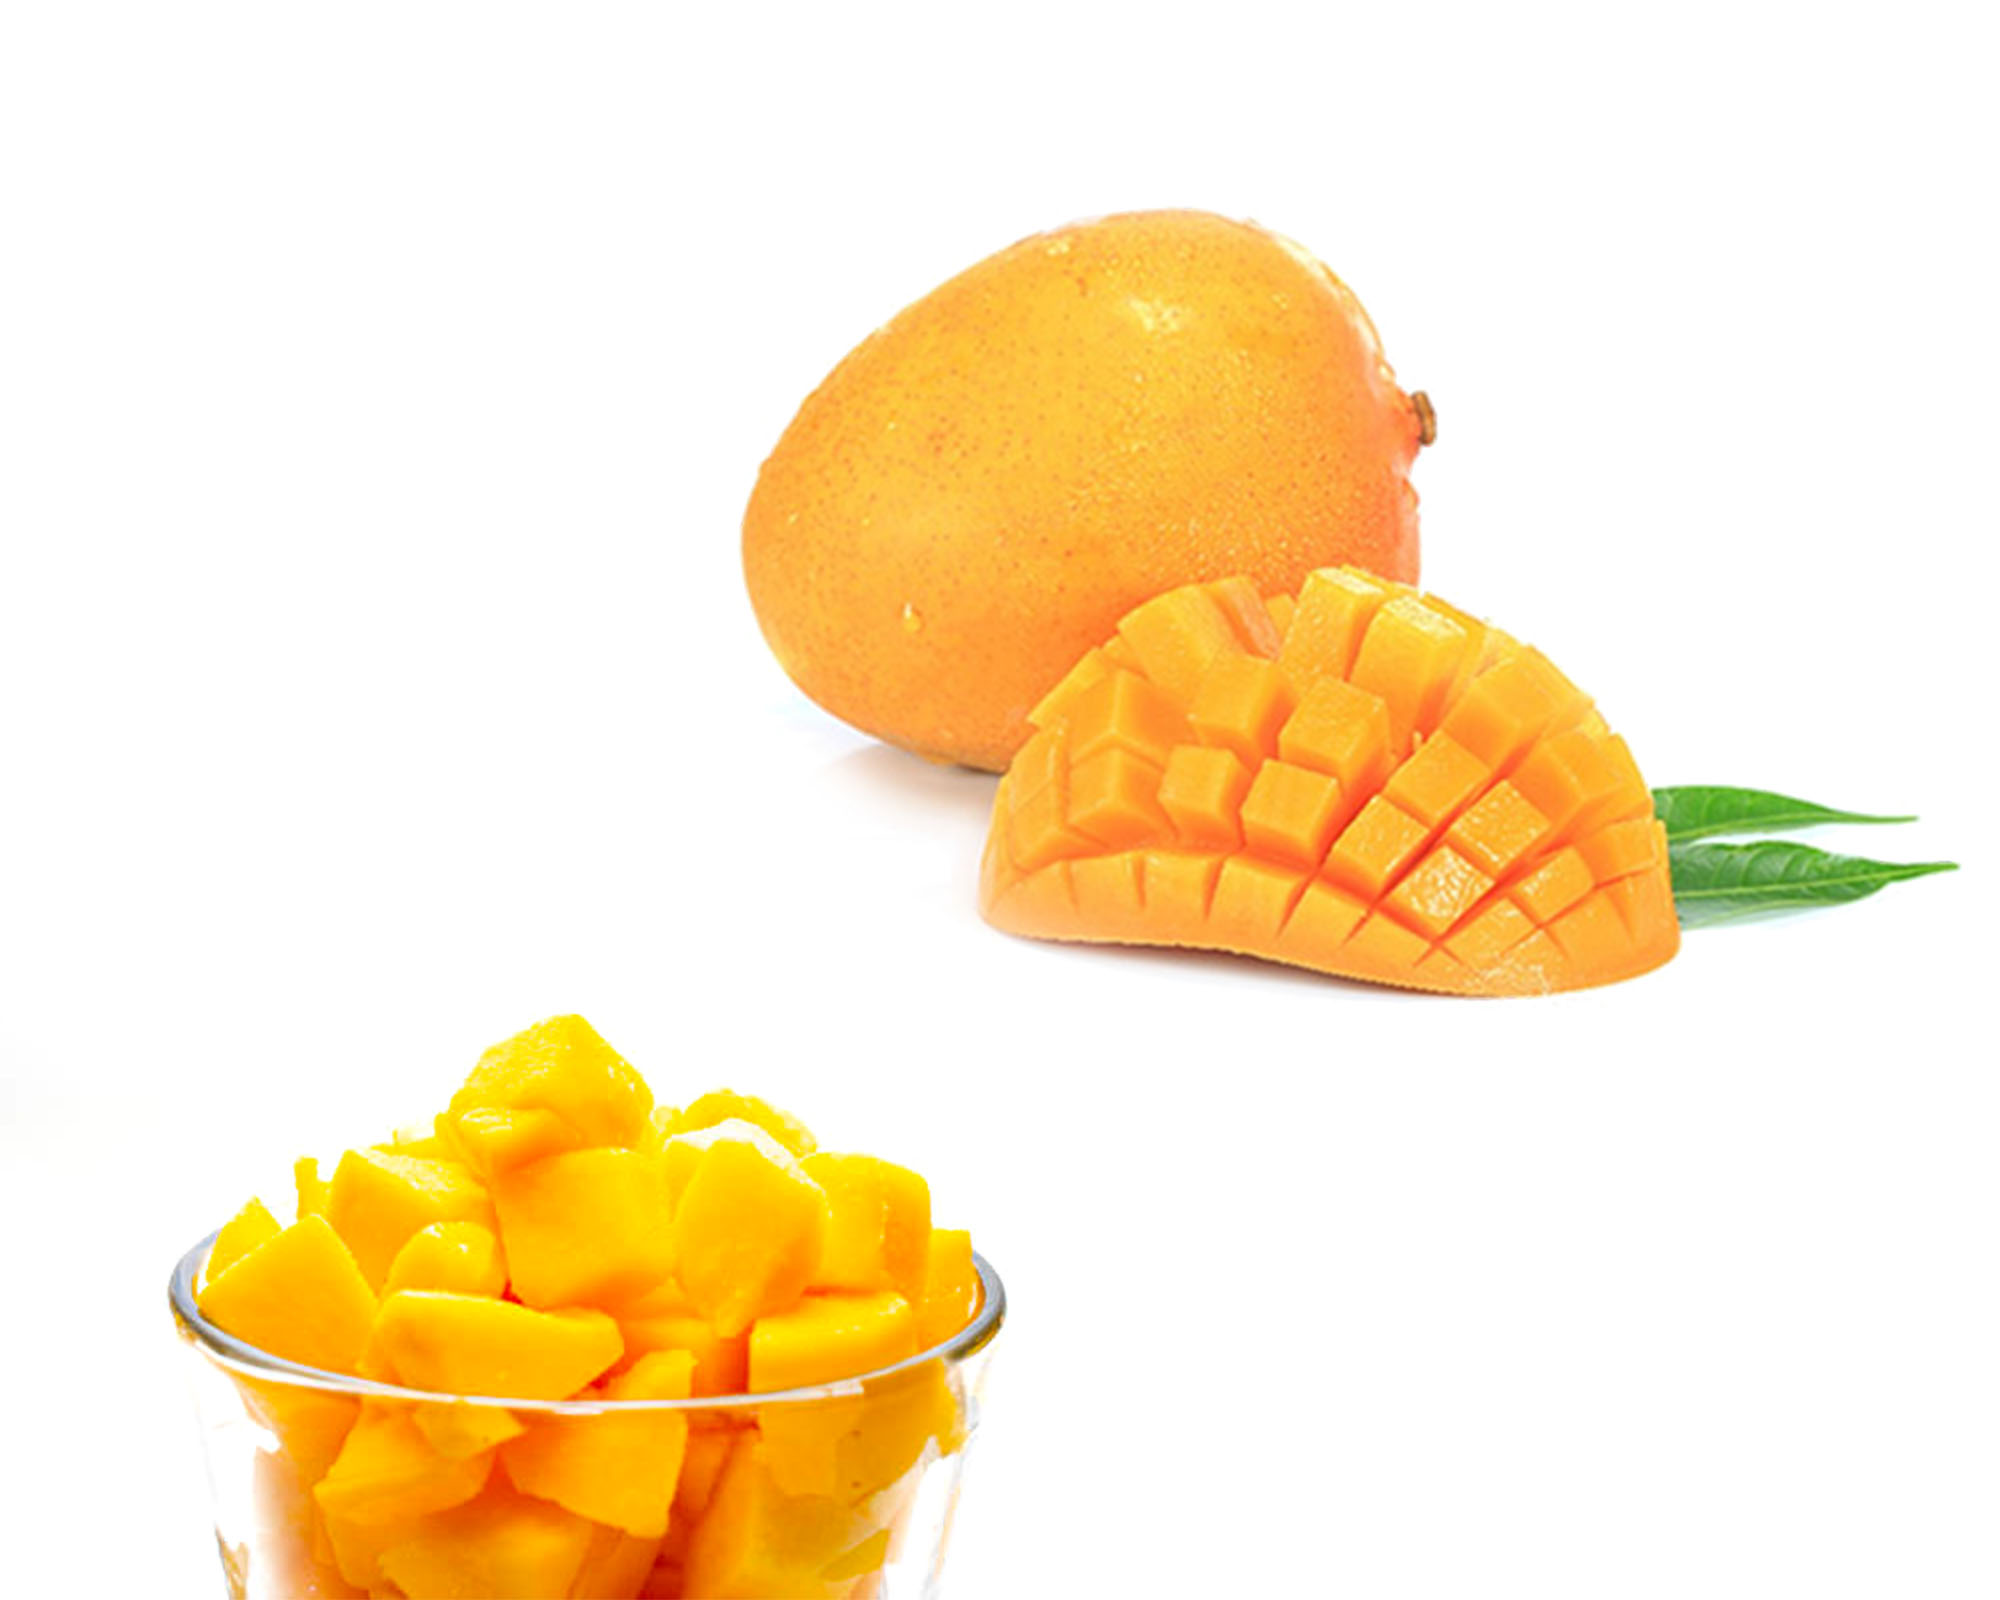 Frozen mango